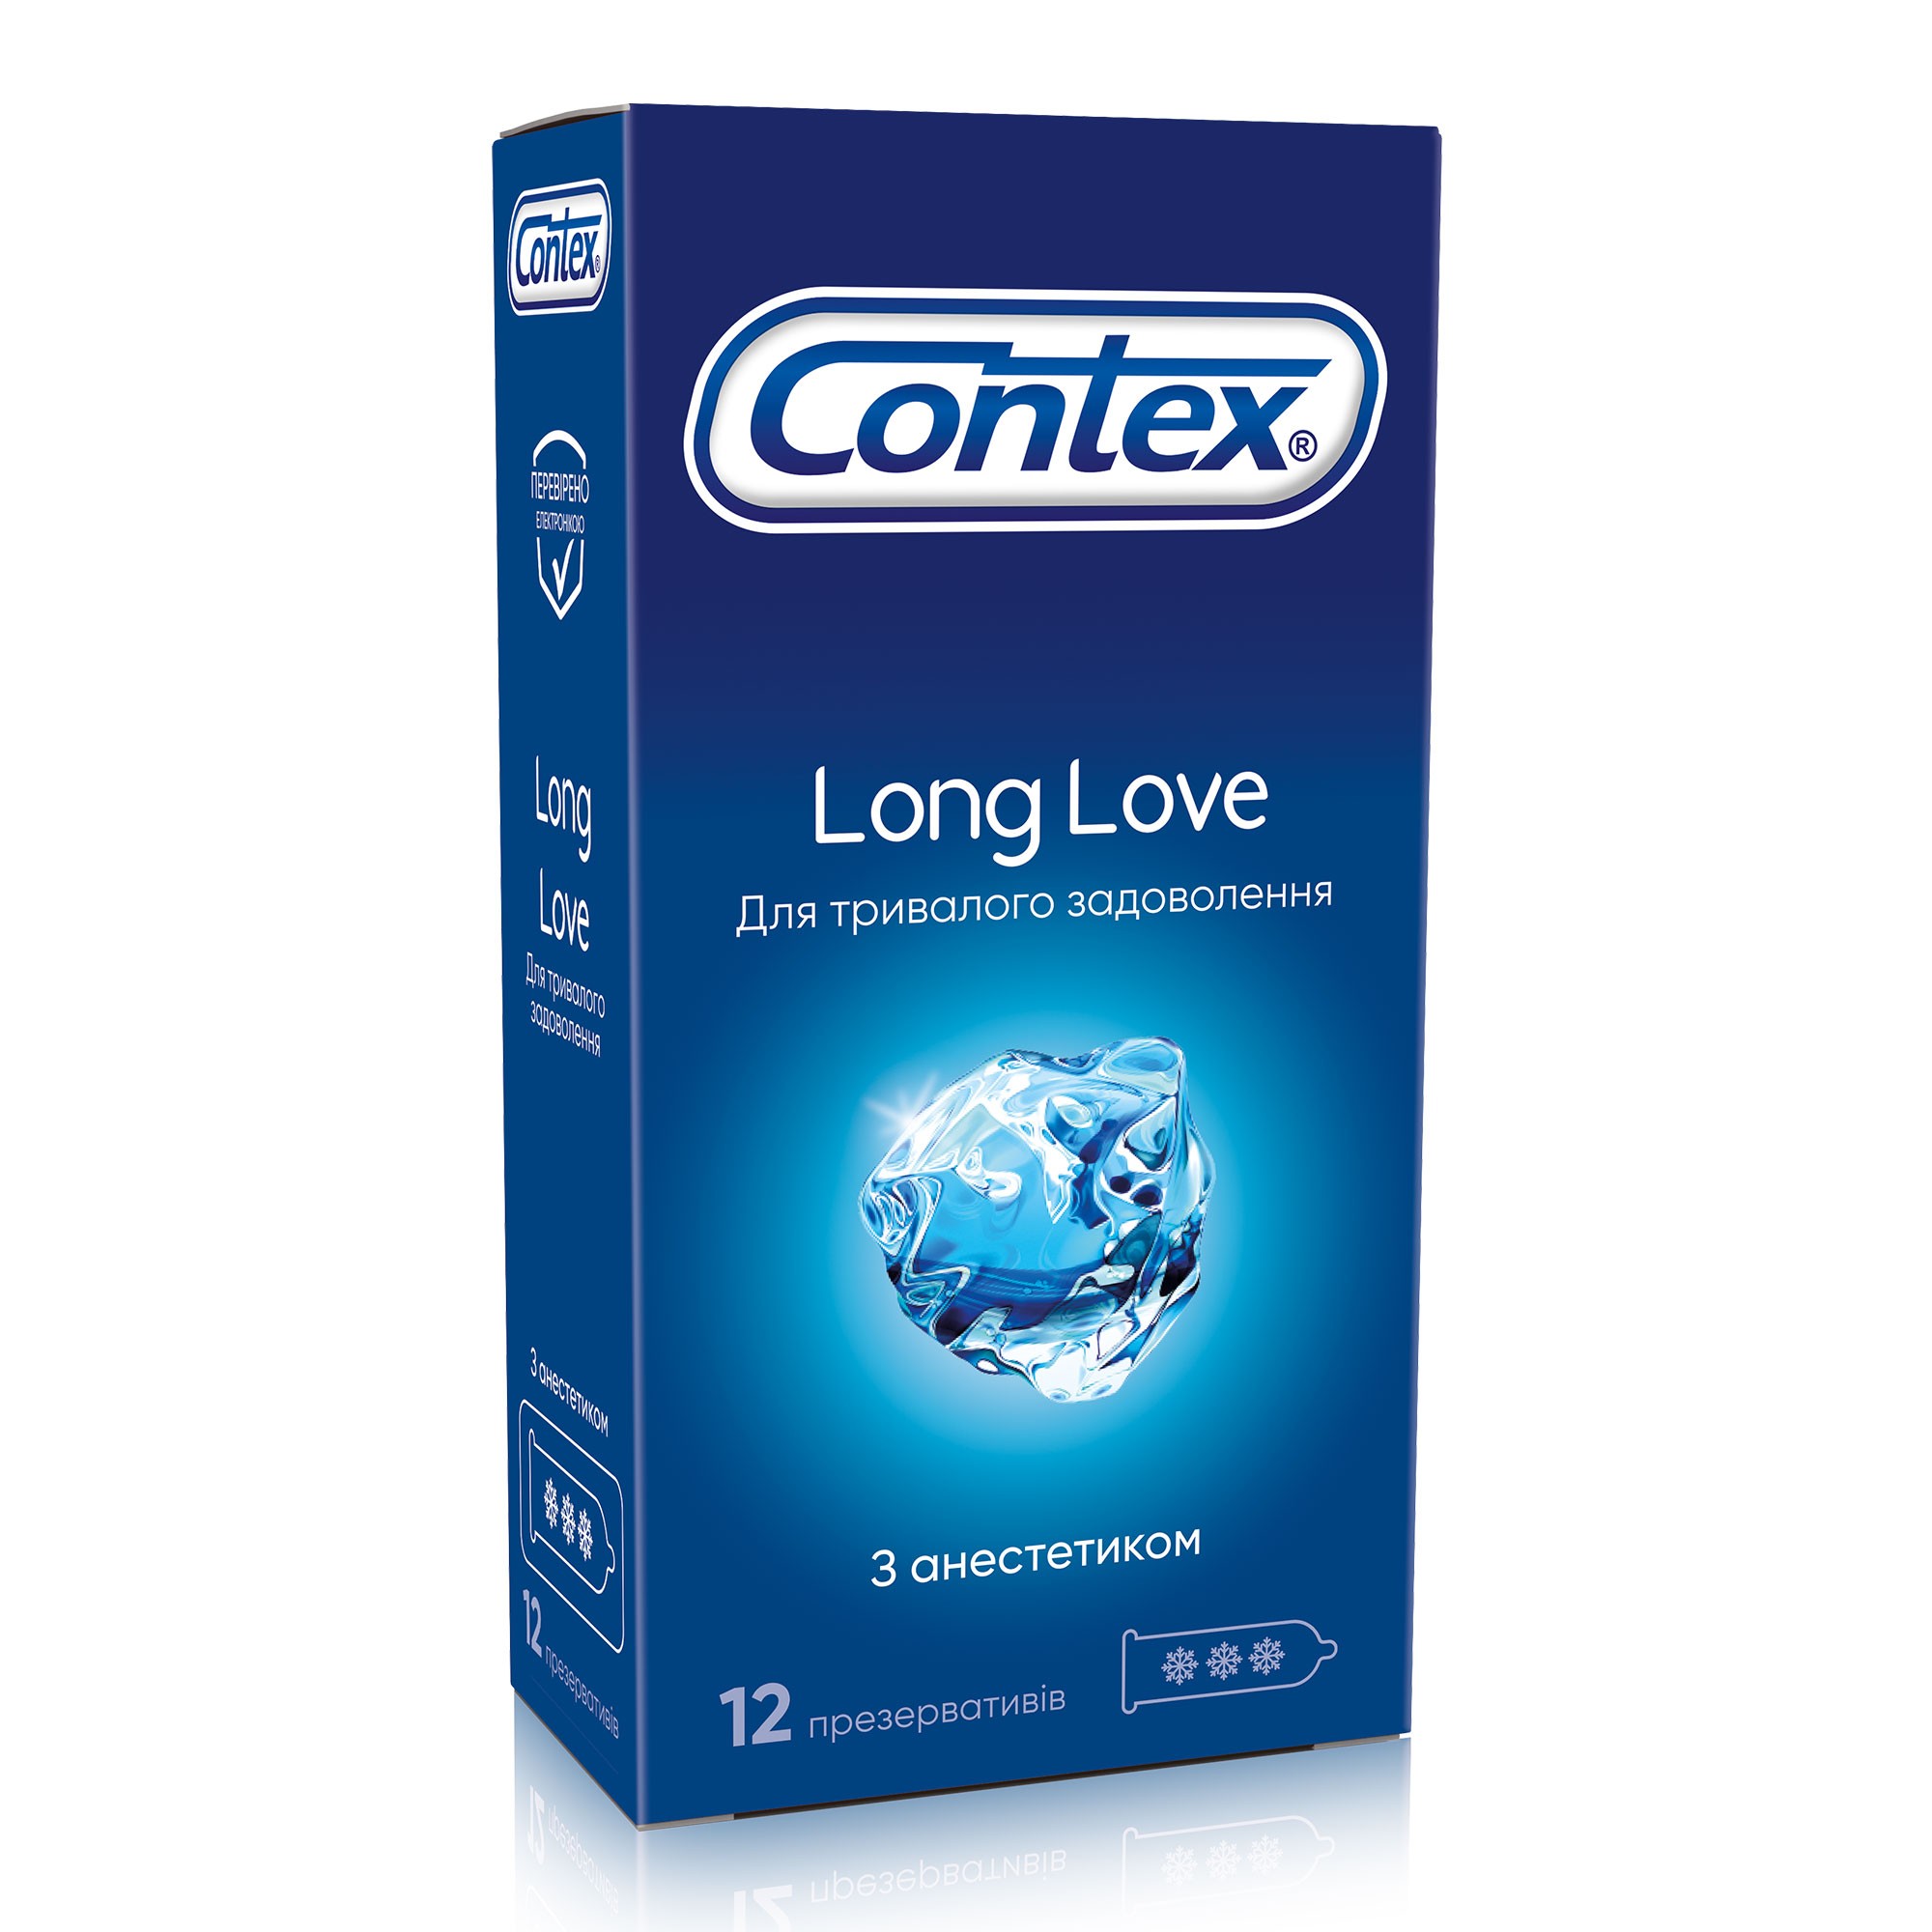 Лонг лов. Презервативы 12 long Love Контекс. Презервативы Contex long Love,12 шт. Контекс long Love с анестетиком. Контекс презервативы long Love (с анестетиком) №12.